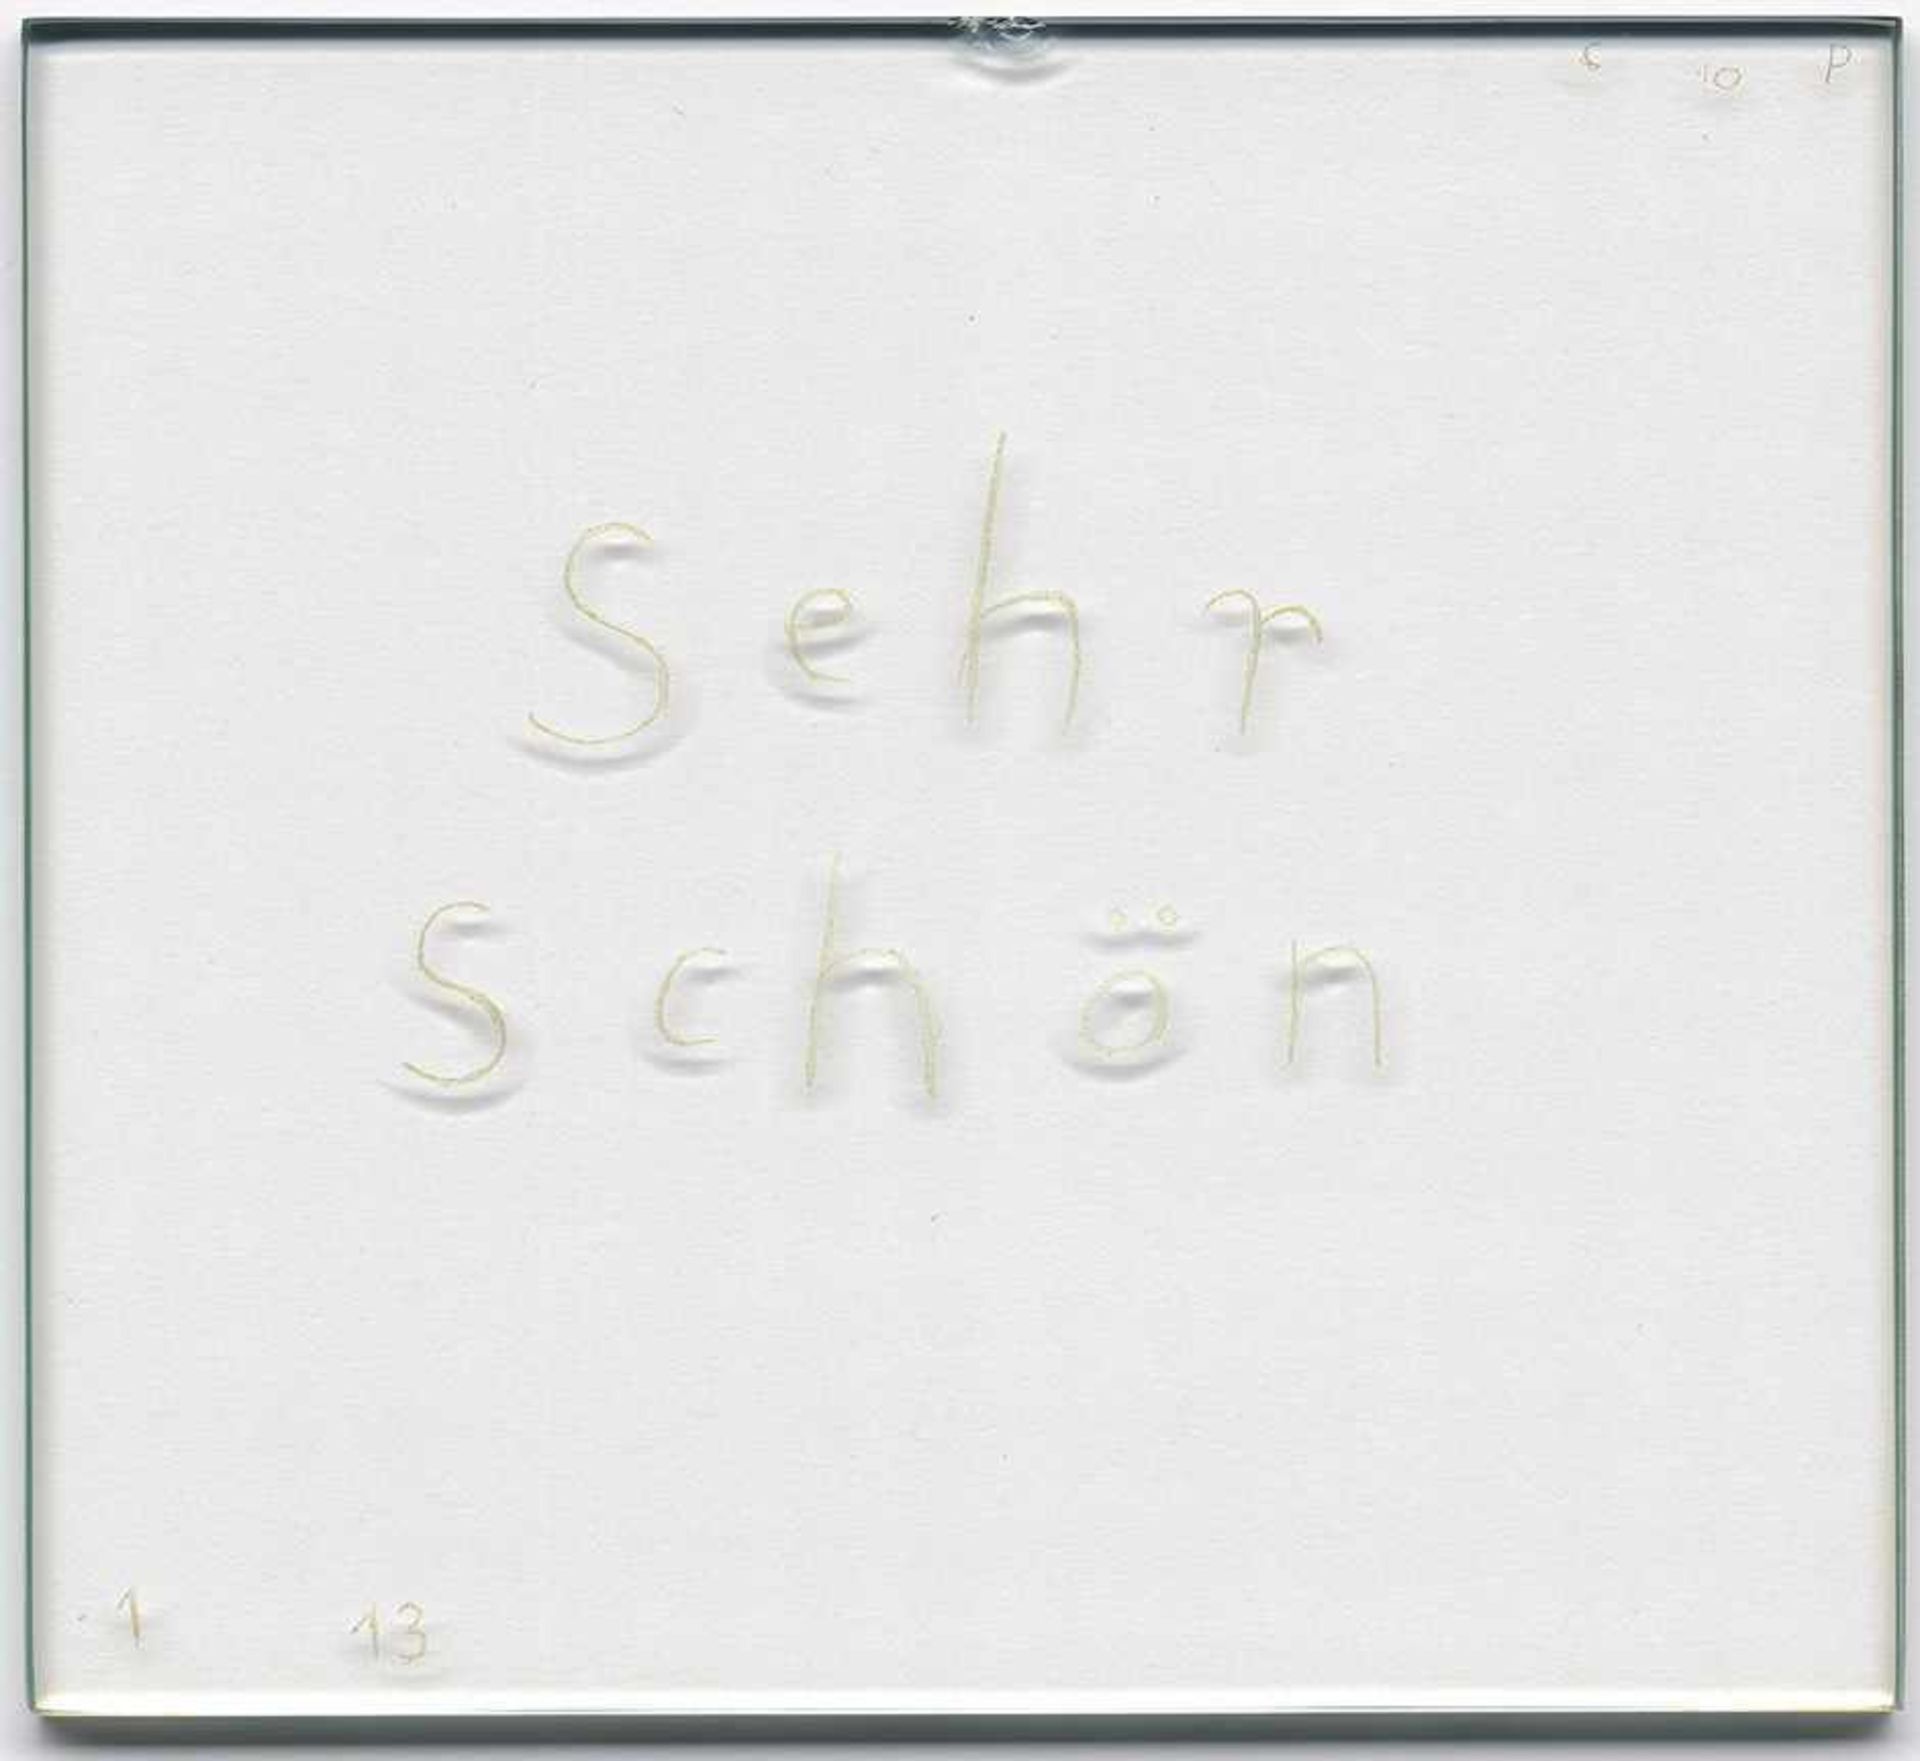 Paeffgen, C. O.: "Sehr schön""Sehr schön"Objekt. Glasscheibe, eingeritzt. Wohl 1990er Jahre.27 x